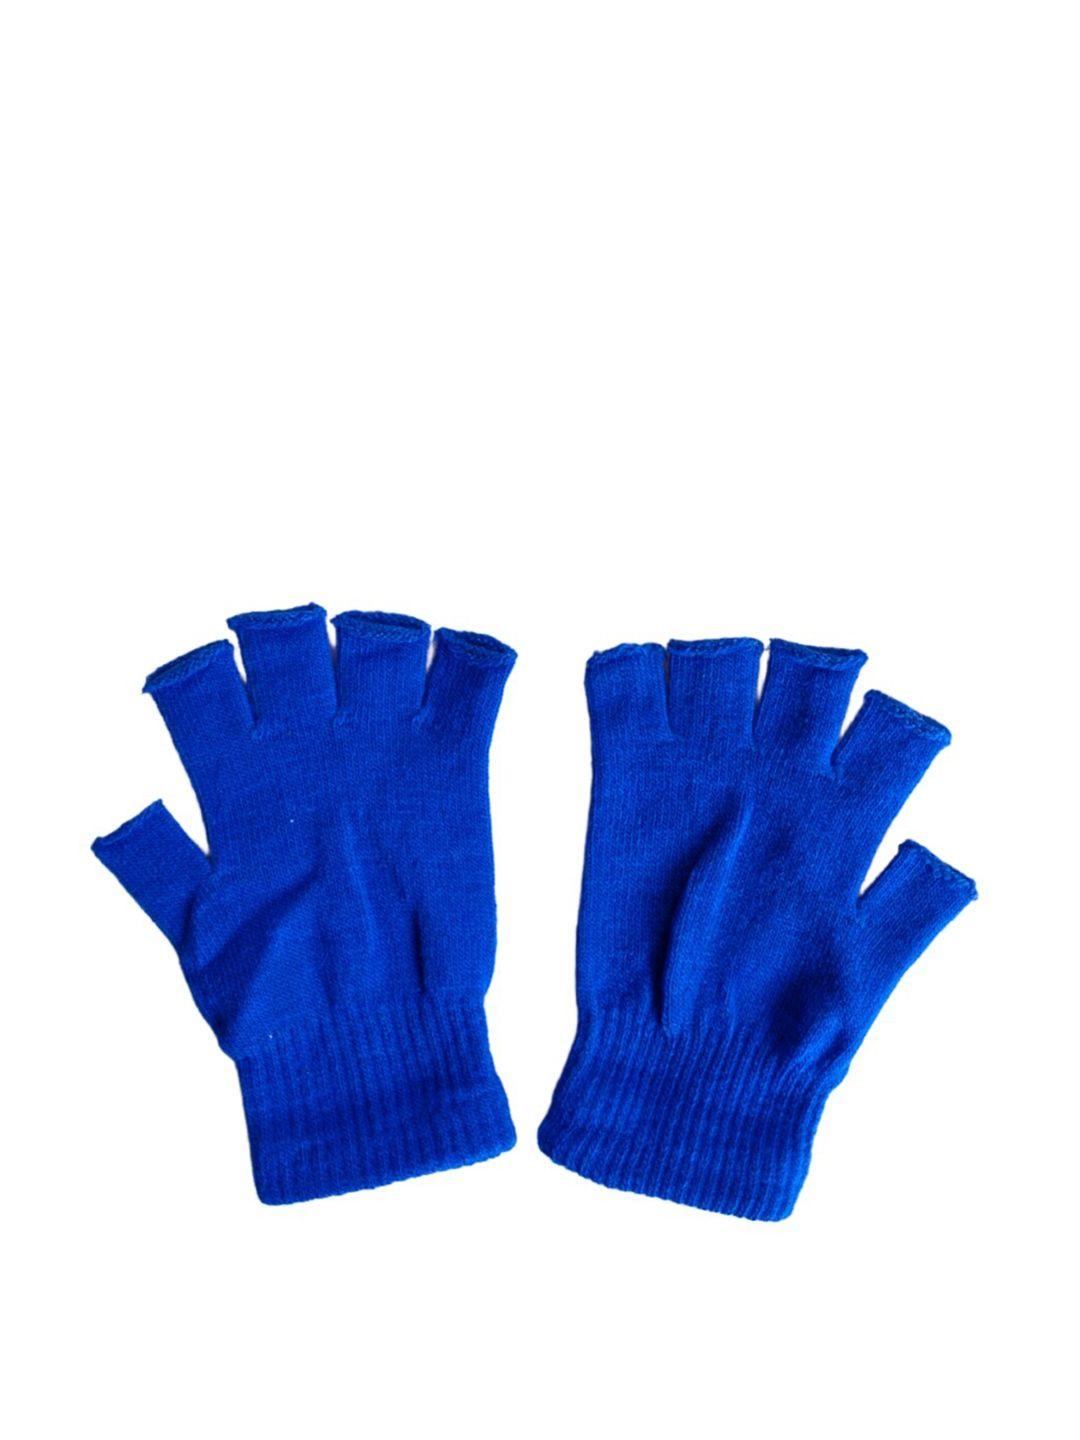 tipy-tipy-tap-girls-half-finger-gloves